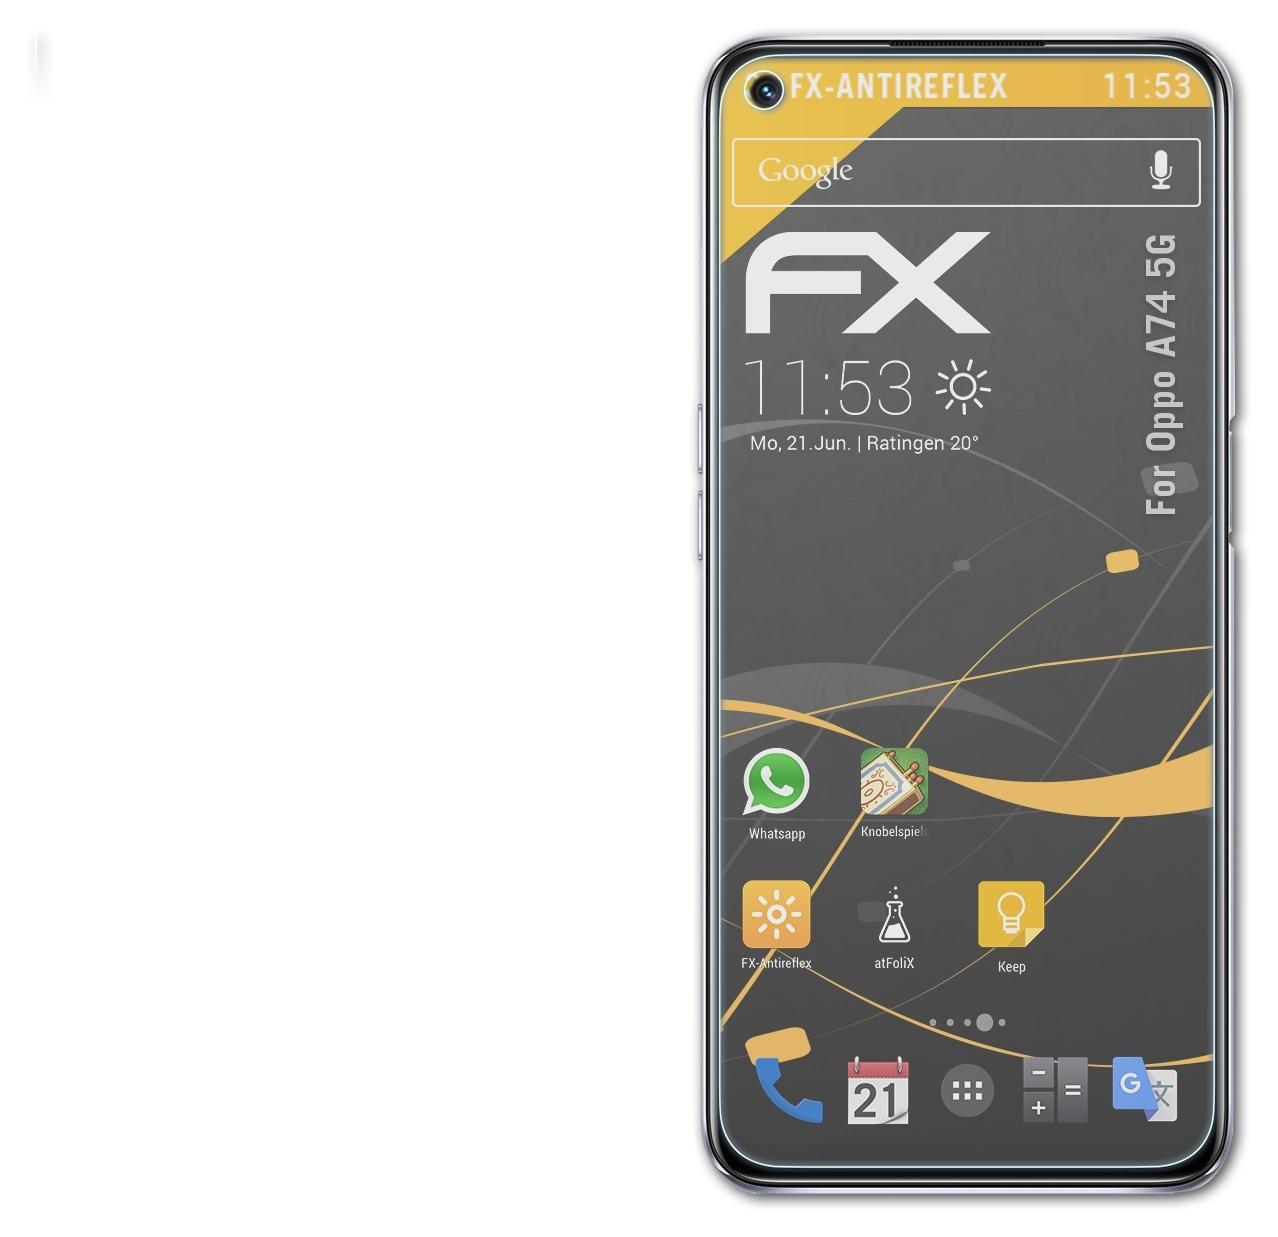 Oppo 3x Displayschutz(für A74 ATFOLIX FX-Antireflex 5G)